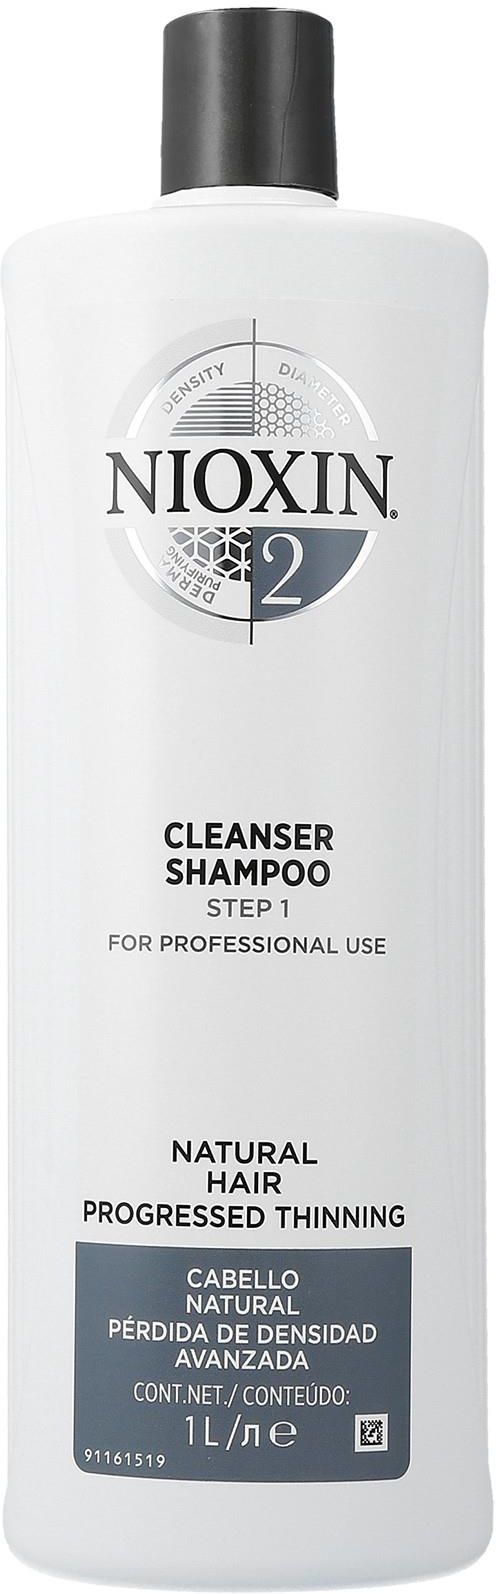 nioxin szampon dla włosów suchych damska